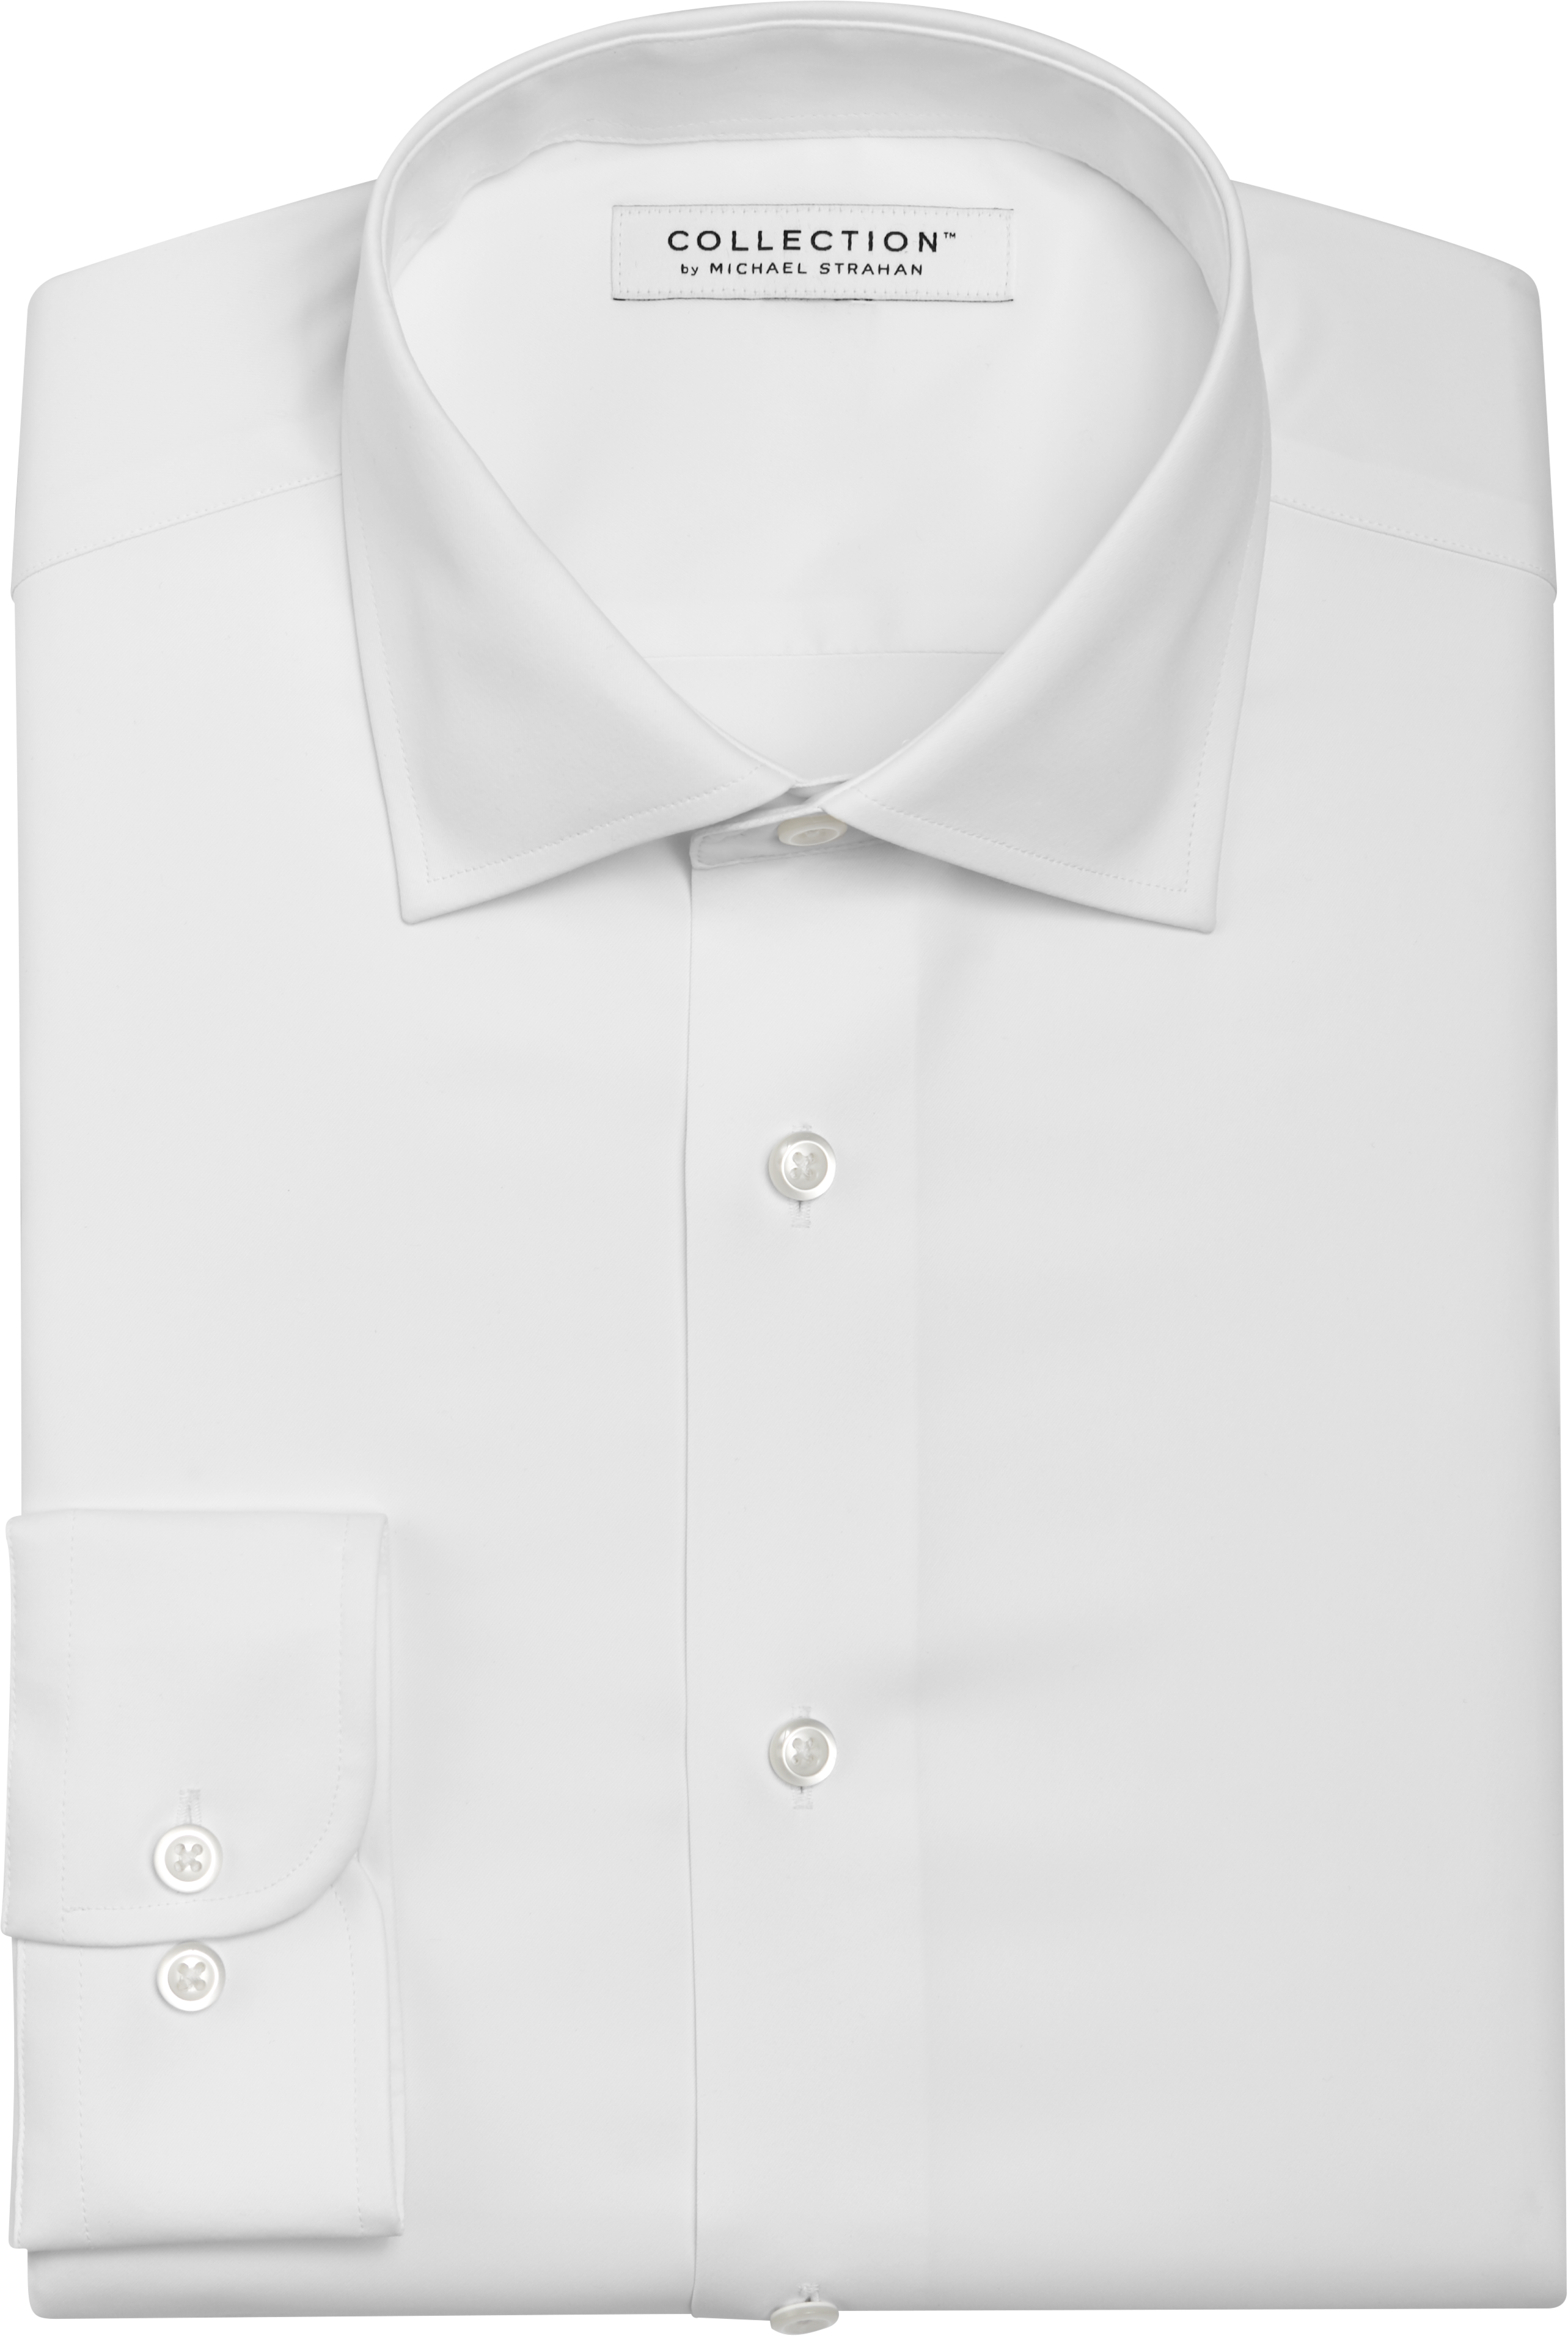 Michael Strahan Active Wear Classic Fit Dress Shirt, White - Men's Sale ...